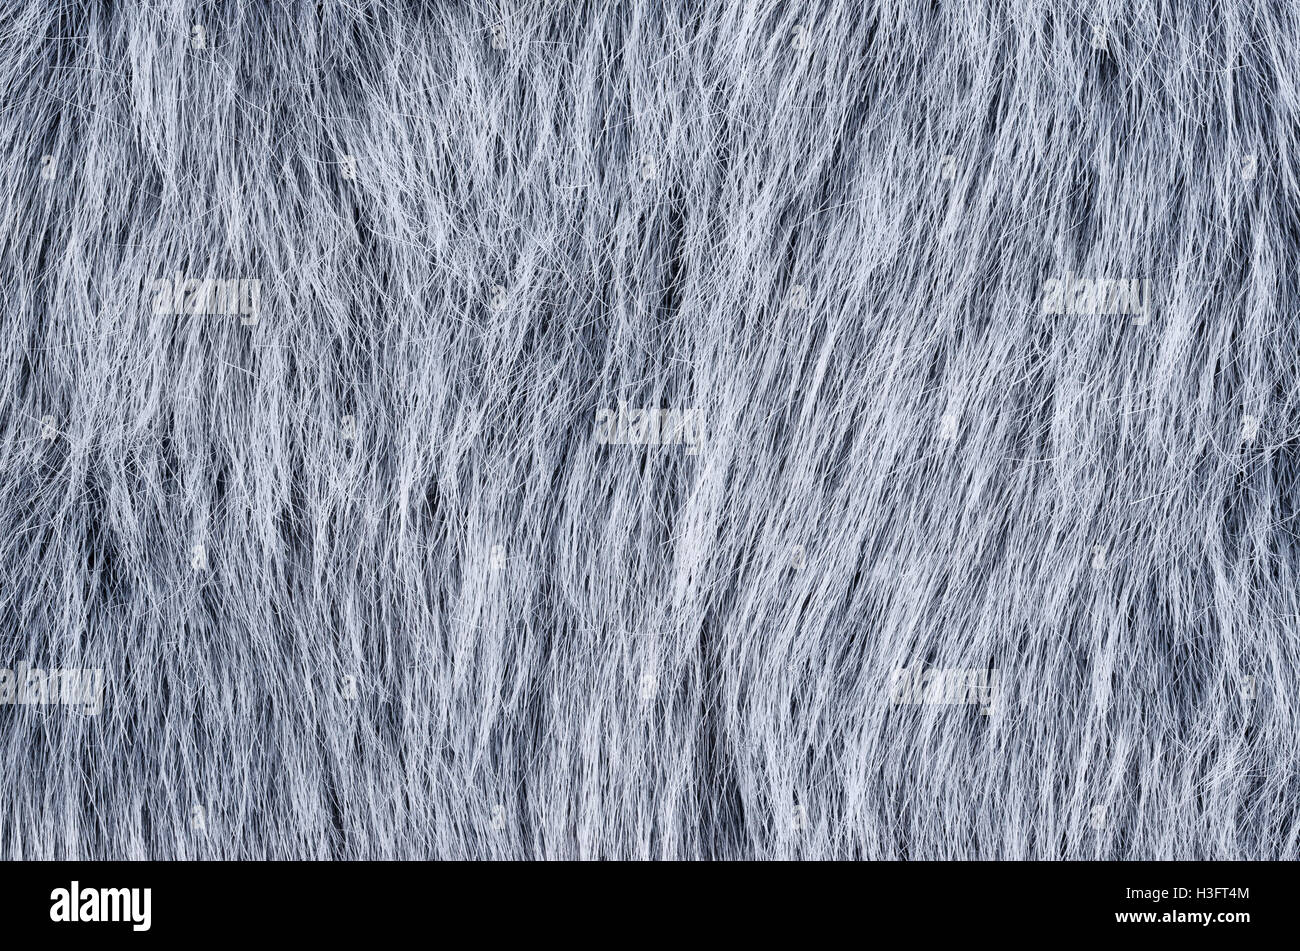 Fausse Fourrure gris à l'horizontale. Même la fausse fourrure loup faits de fibres synthétiques, conçu pour ressembler à fourrure. Fun fur imitation. Banque D'Images